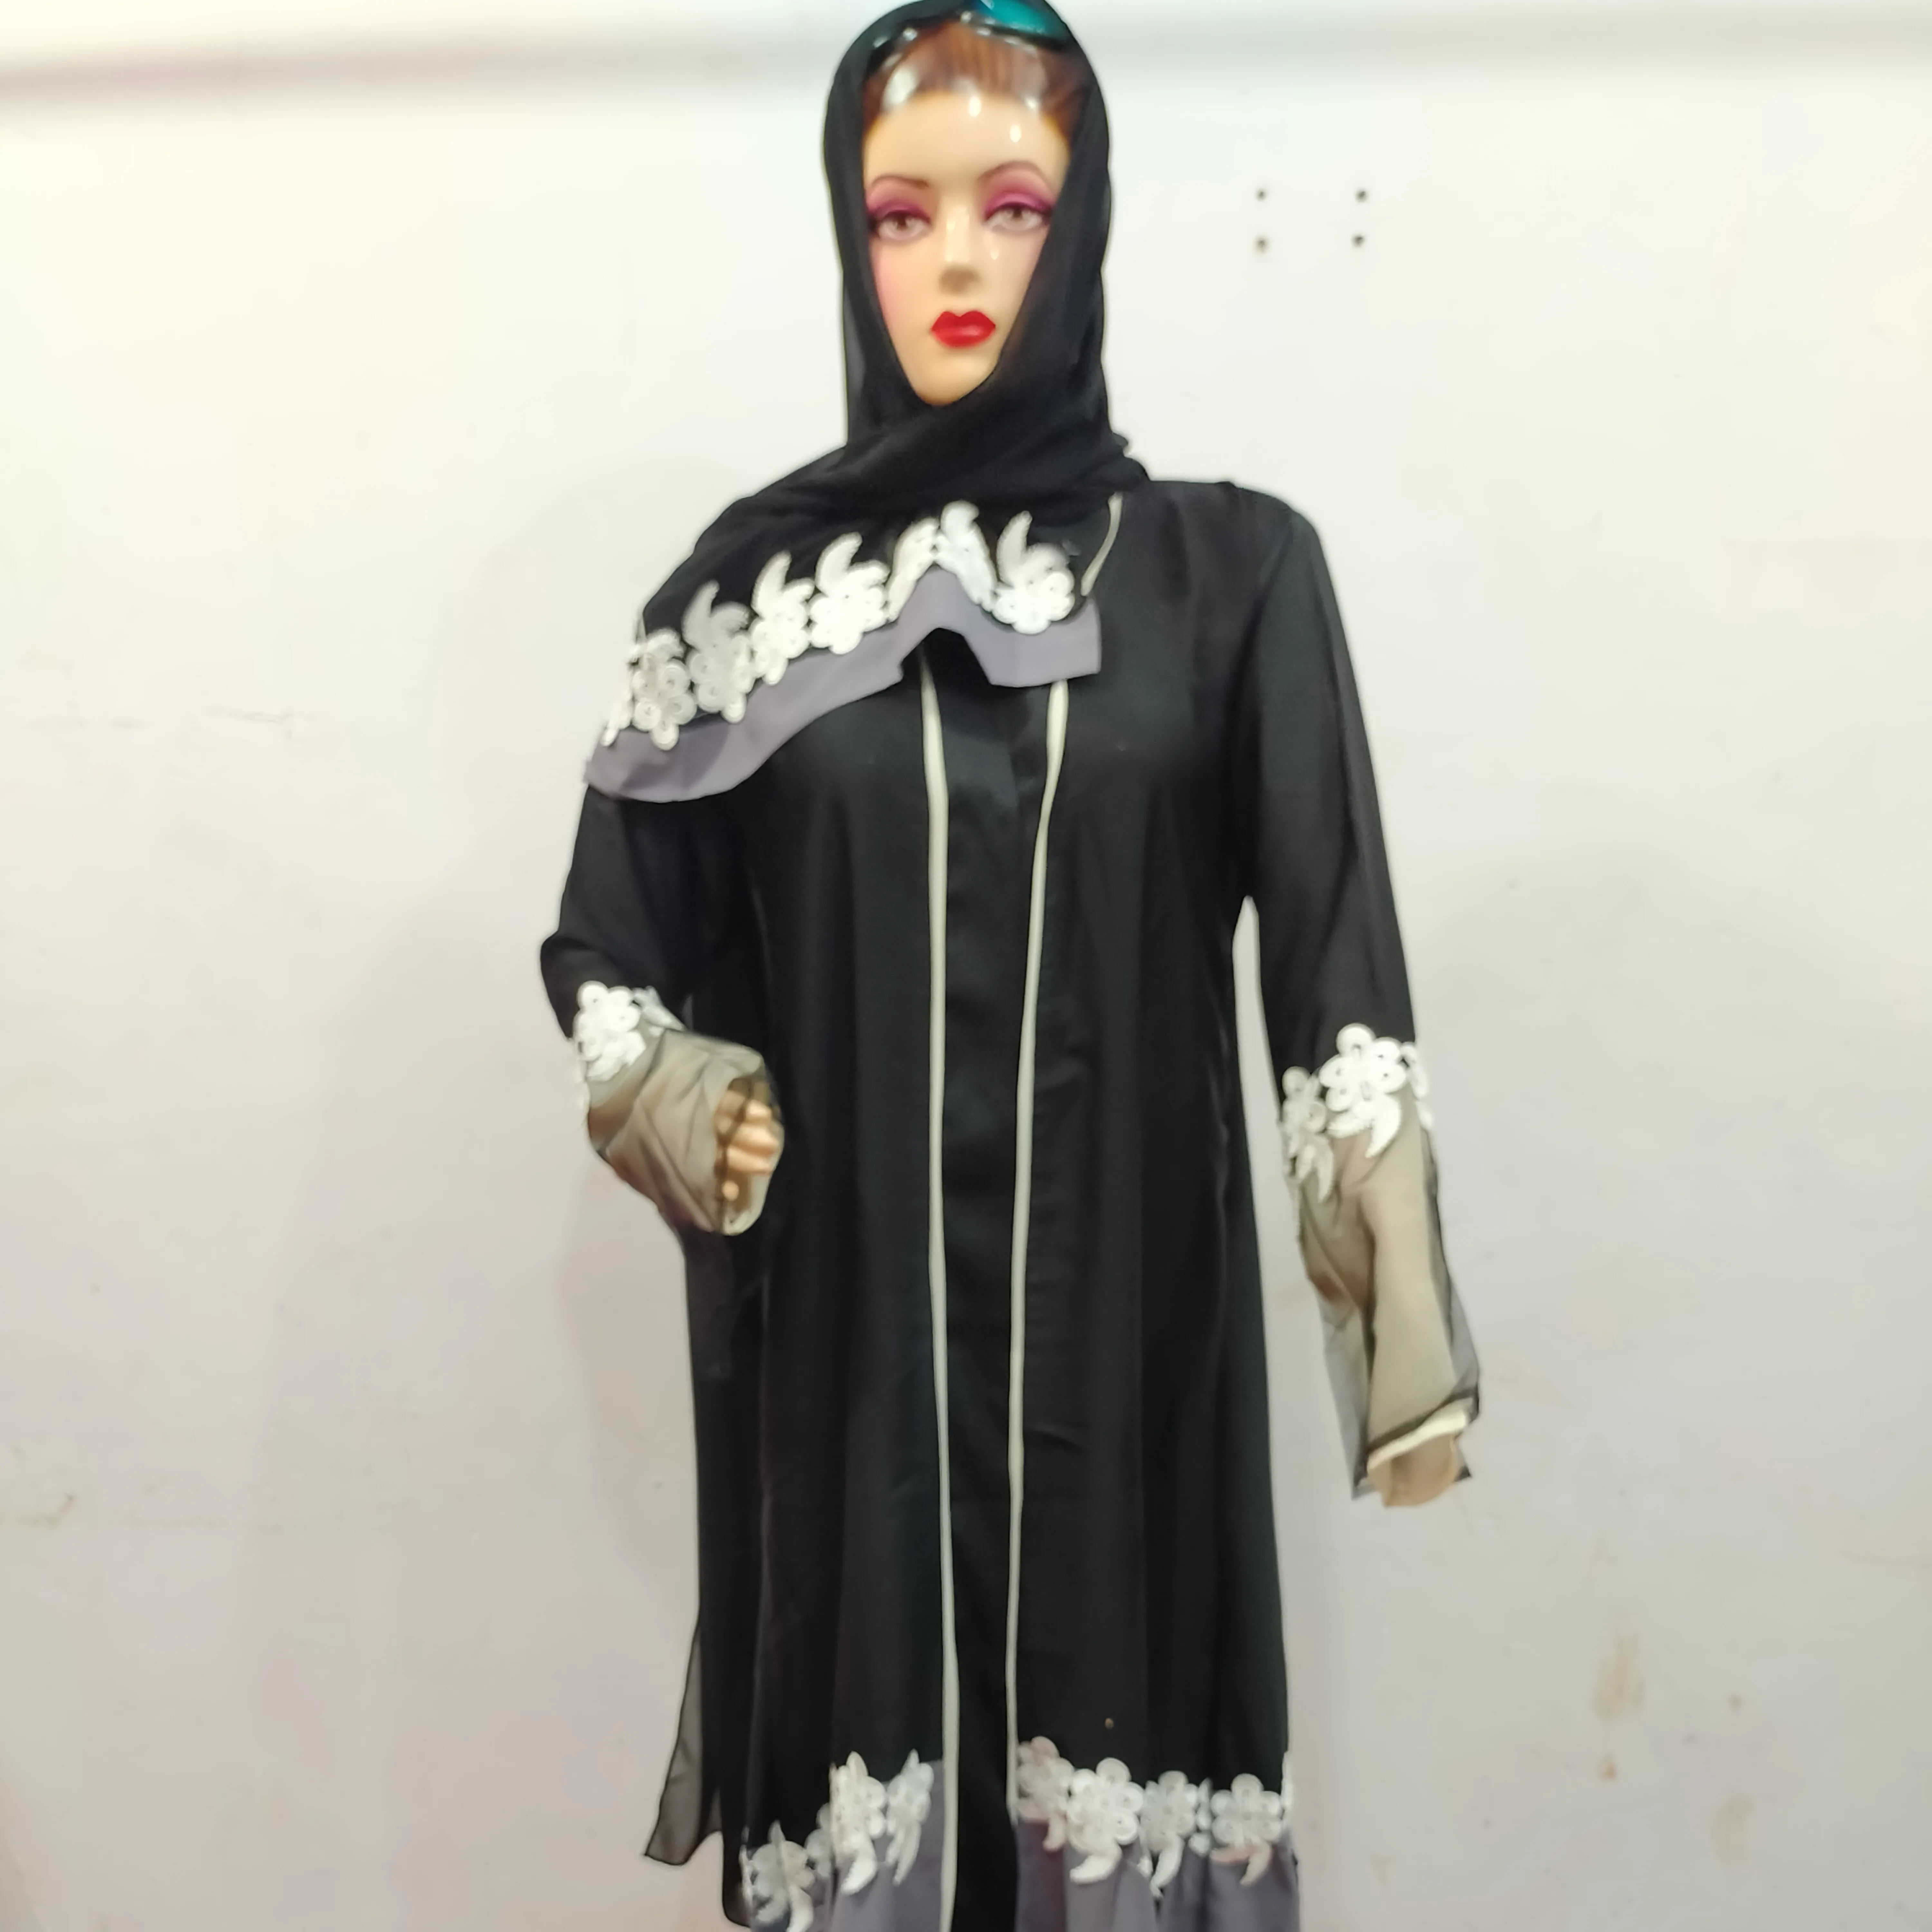 Süslenmiş Net ve dantel Burkha resmi ve fırsat giymek şık Burka müslüman elbise orta doğu körfez afrika ülkeleri